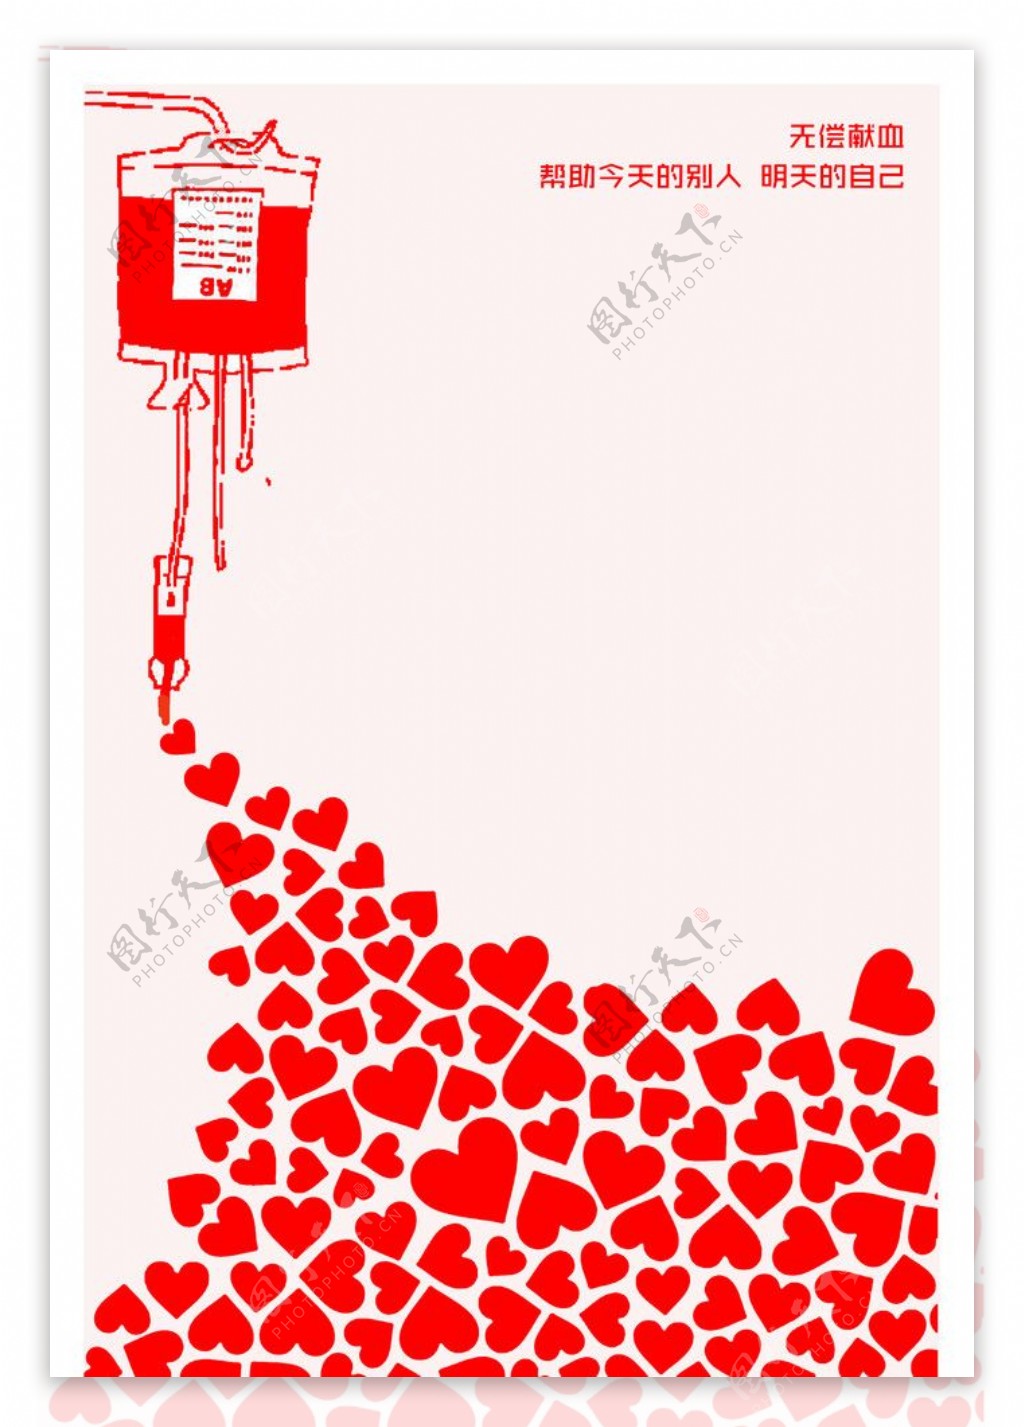 献血公益海报图片